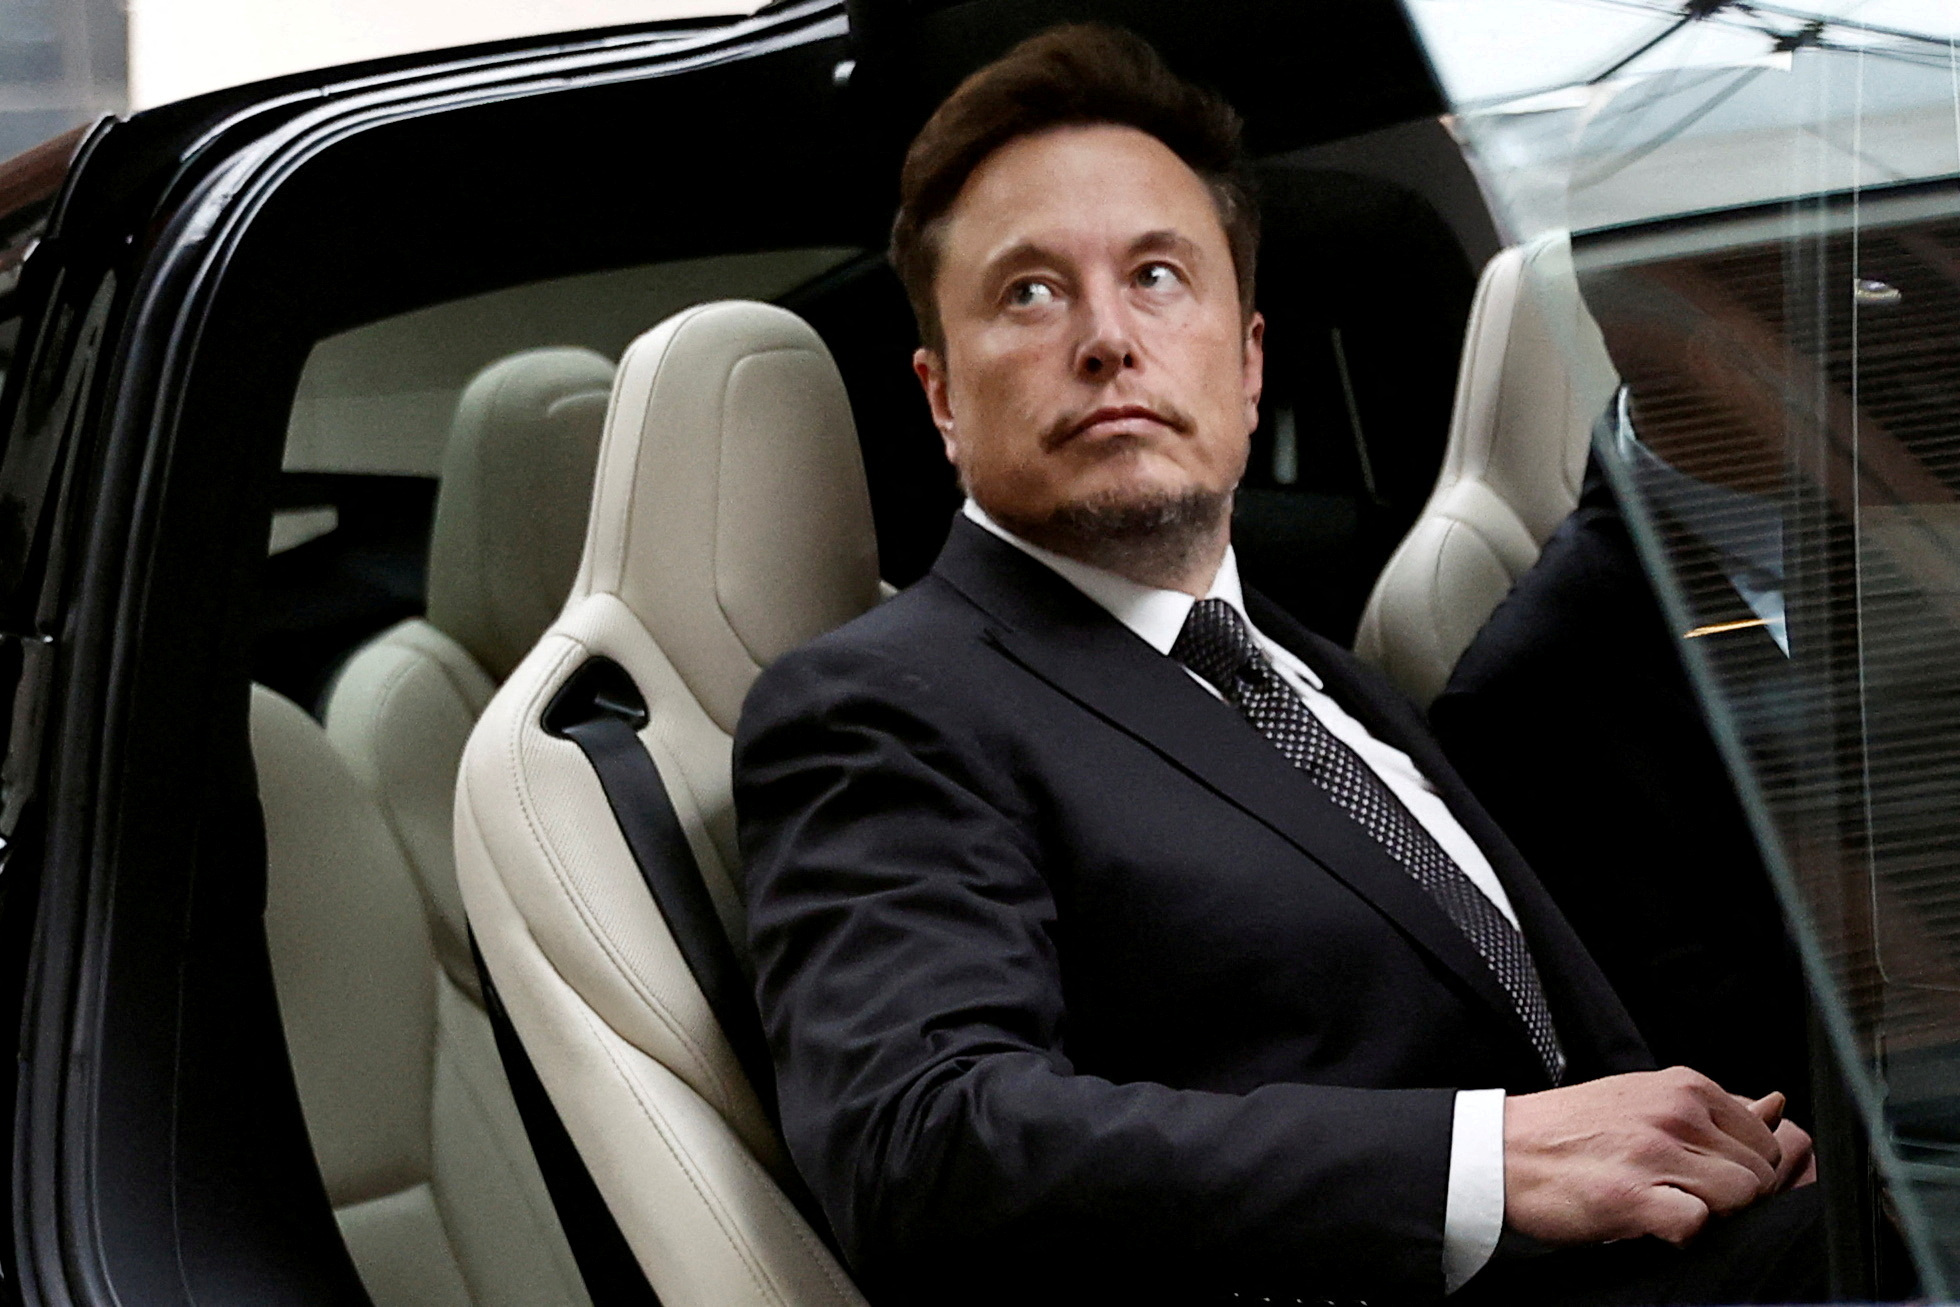 Ίλον Μασκ: Νέα αγωγή – Από μέτοχο της Tesla για ύποπτες συναλλαγές ύψους 7,5 δισ